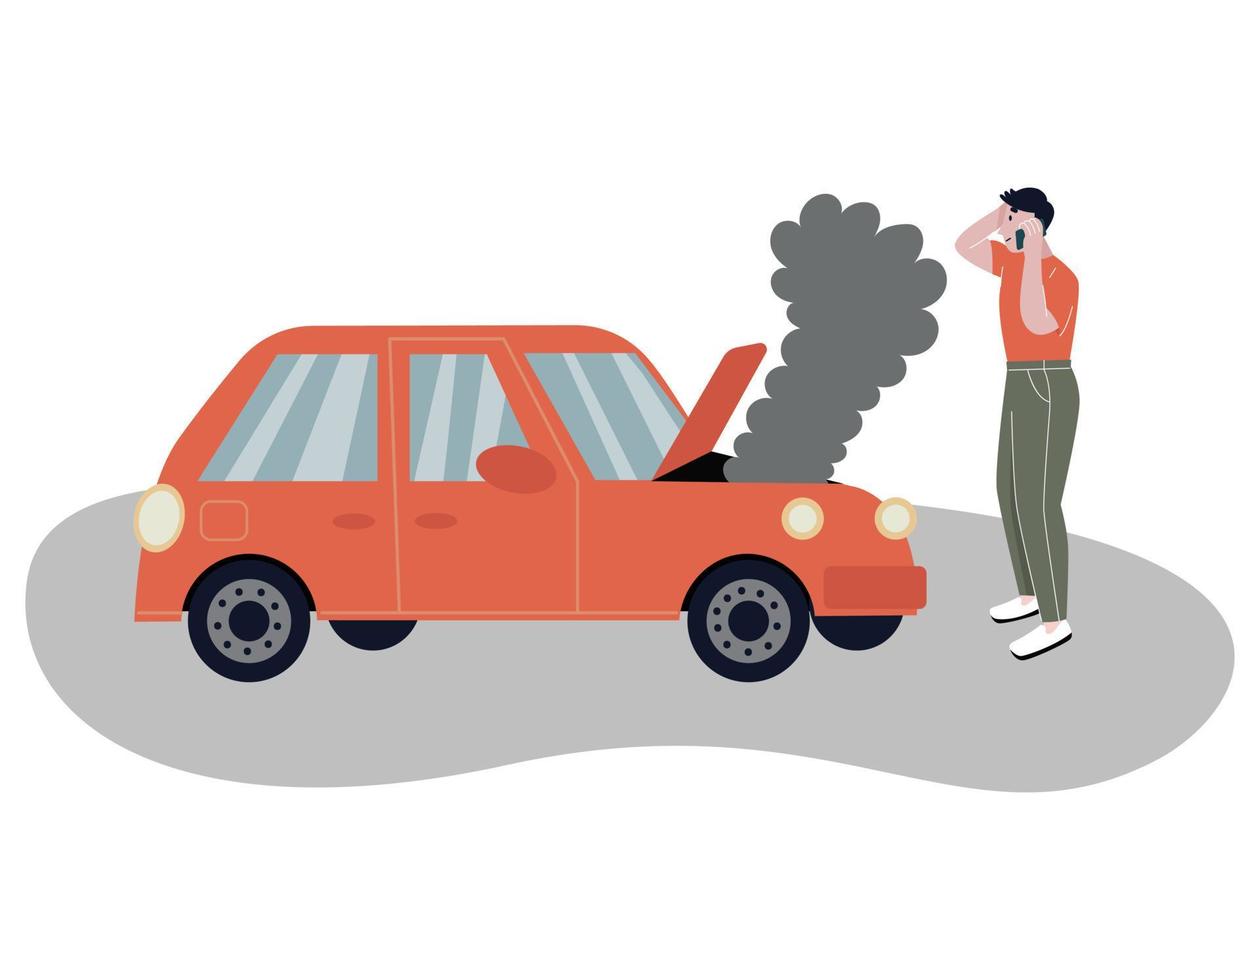 guasto dell'auto sulla strada. un uomo chiama il servizio per aiutare. un'auto difettosa con fumo dal cofano. sfondo bianco isolato. illustrazione vettoriale piatta.